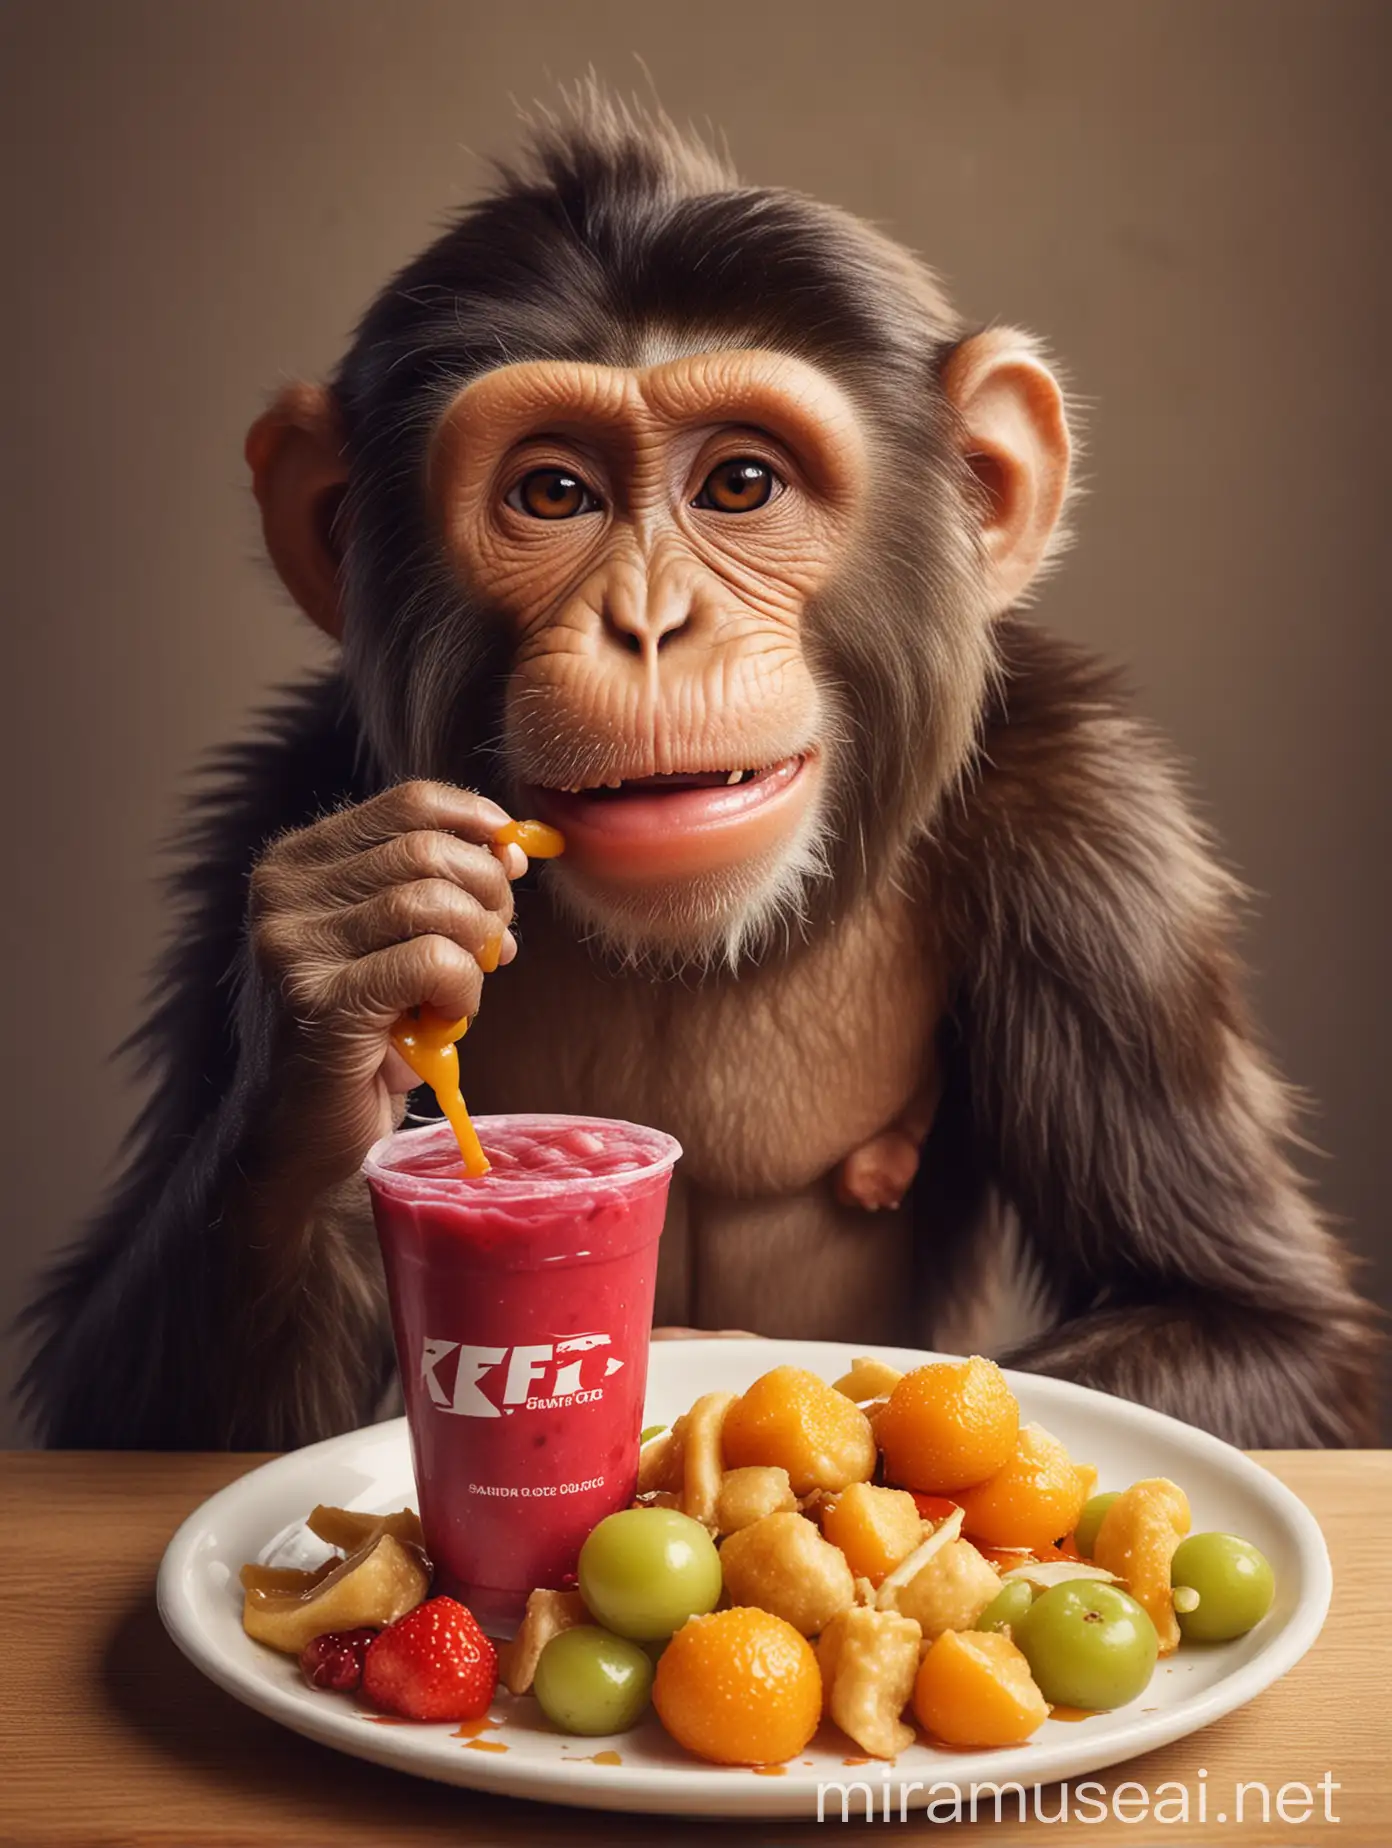 Hungry Monkey Enjoying KFC Meal with Refreshing Grapefruit Punch